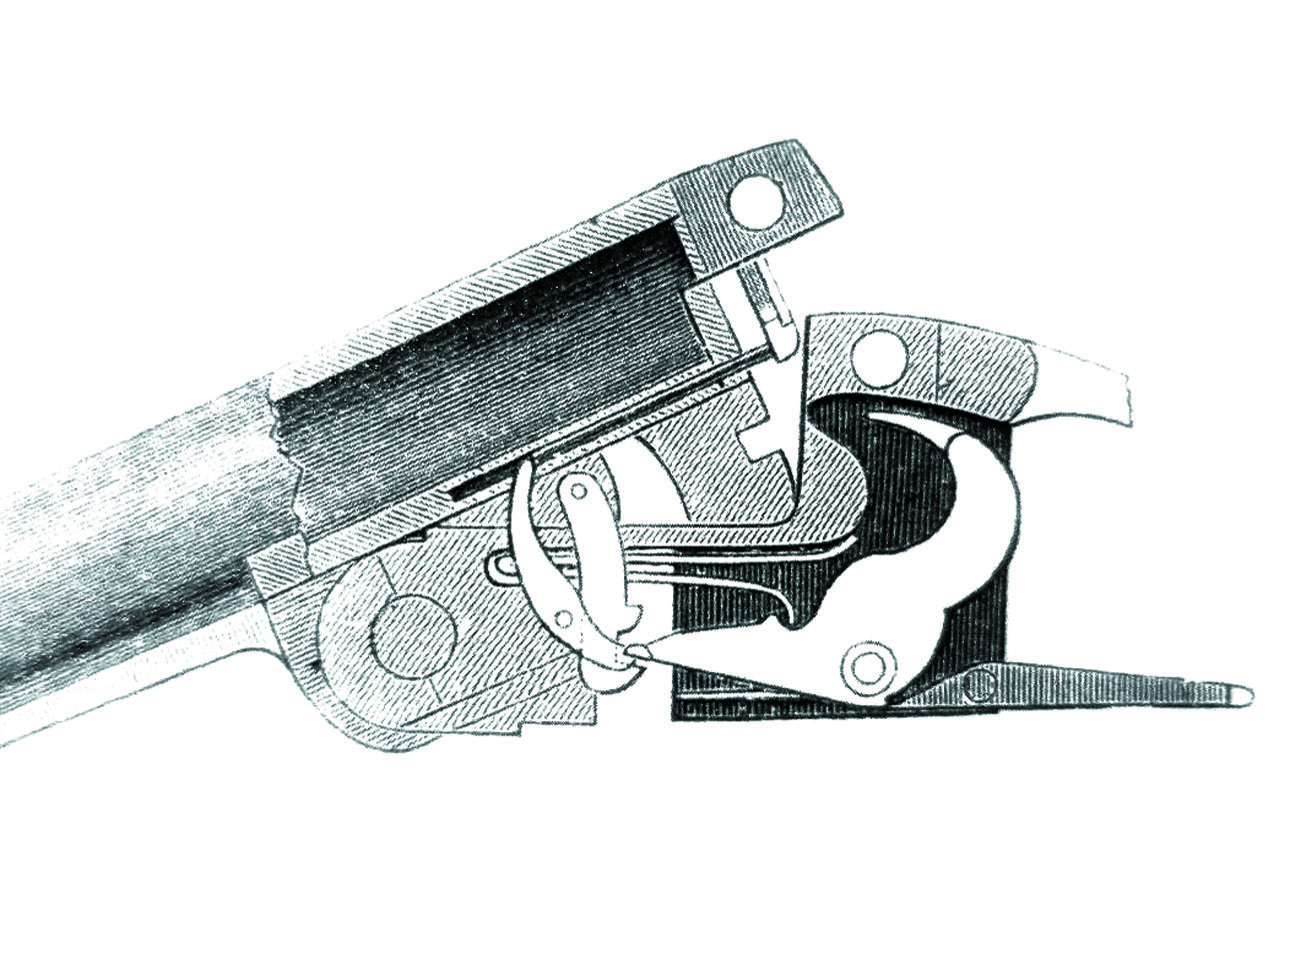 Изображение Взаимодействие деталей УСМ при открывании ружья. Фото автора. 